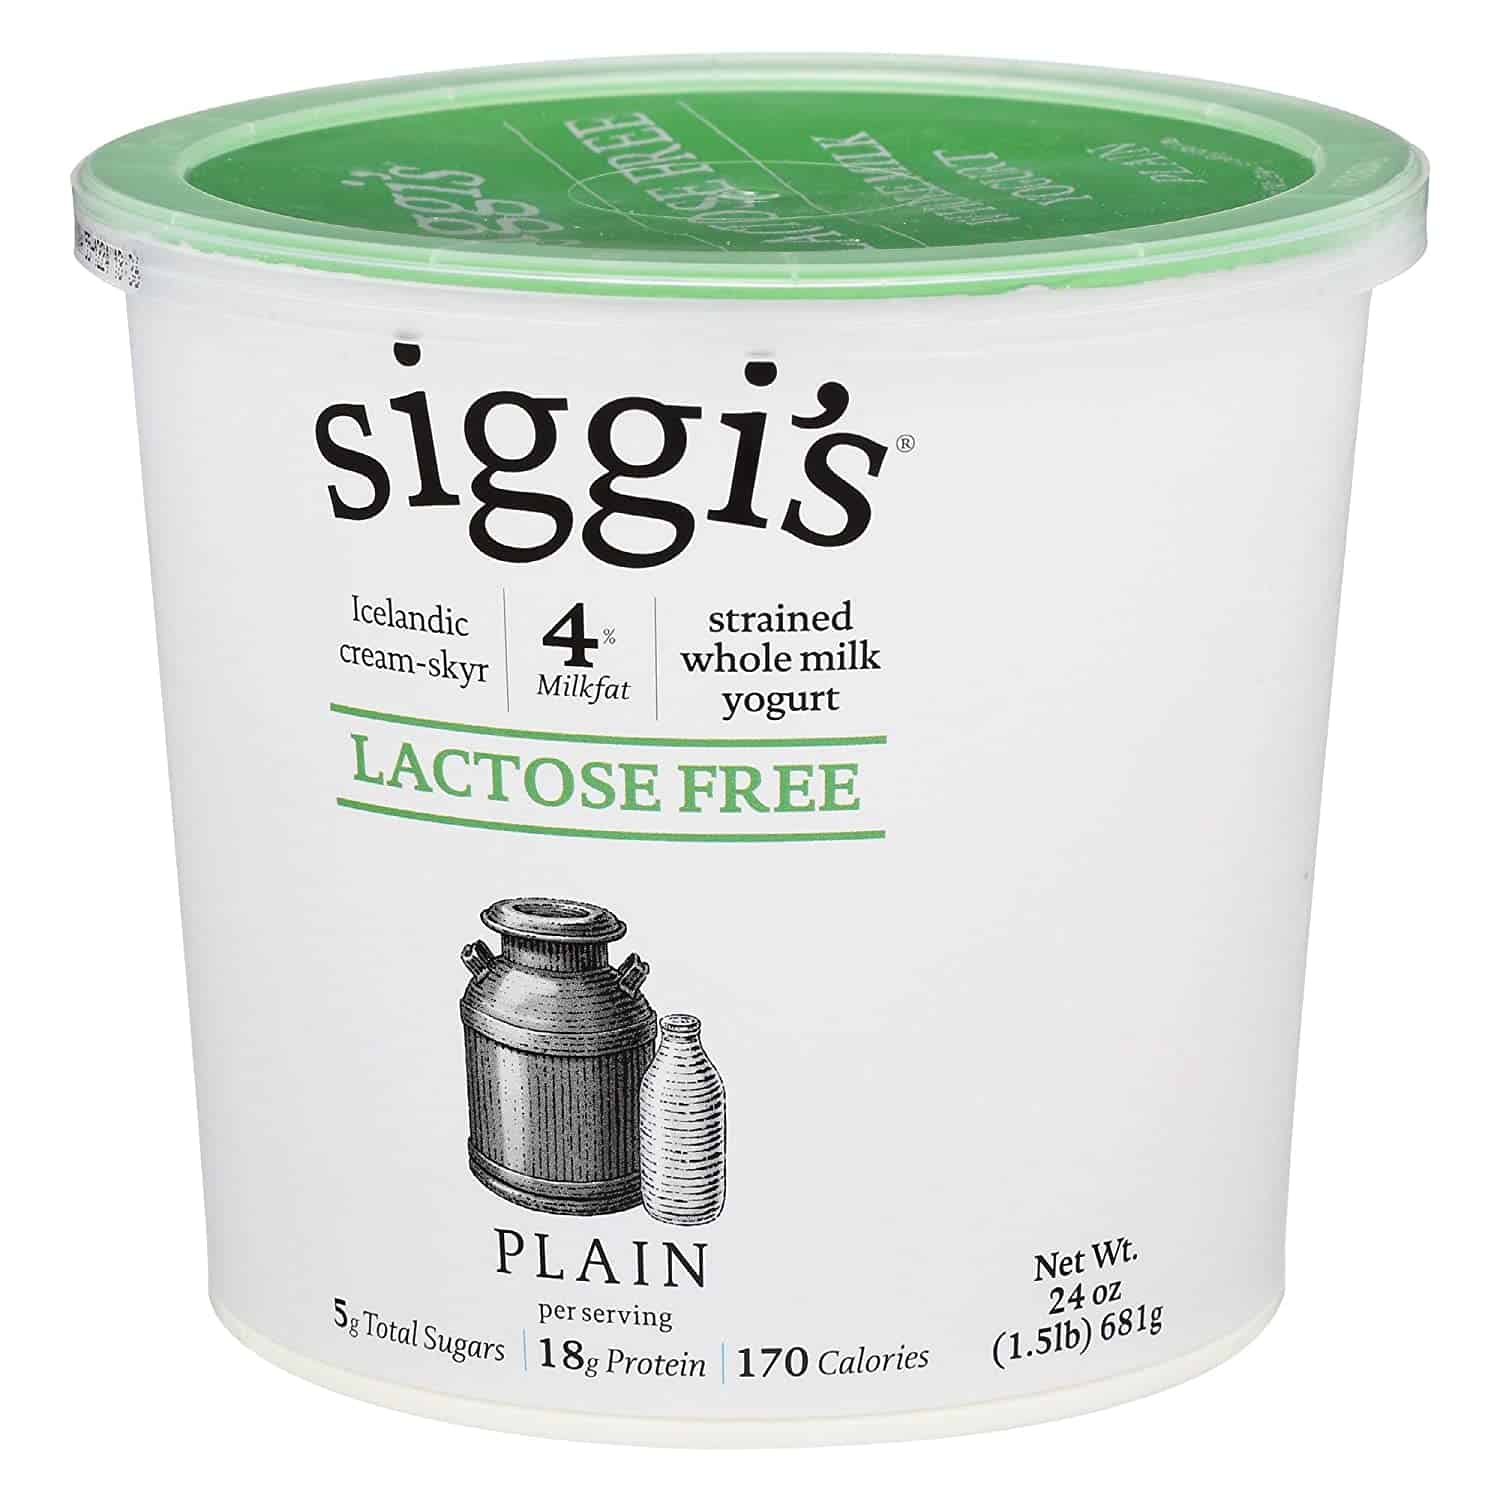 Siggi's, Skyr Lactose Free Yogurt: Plain, 24 Oz.